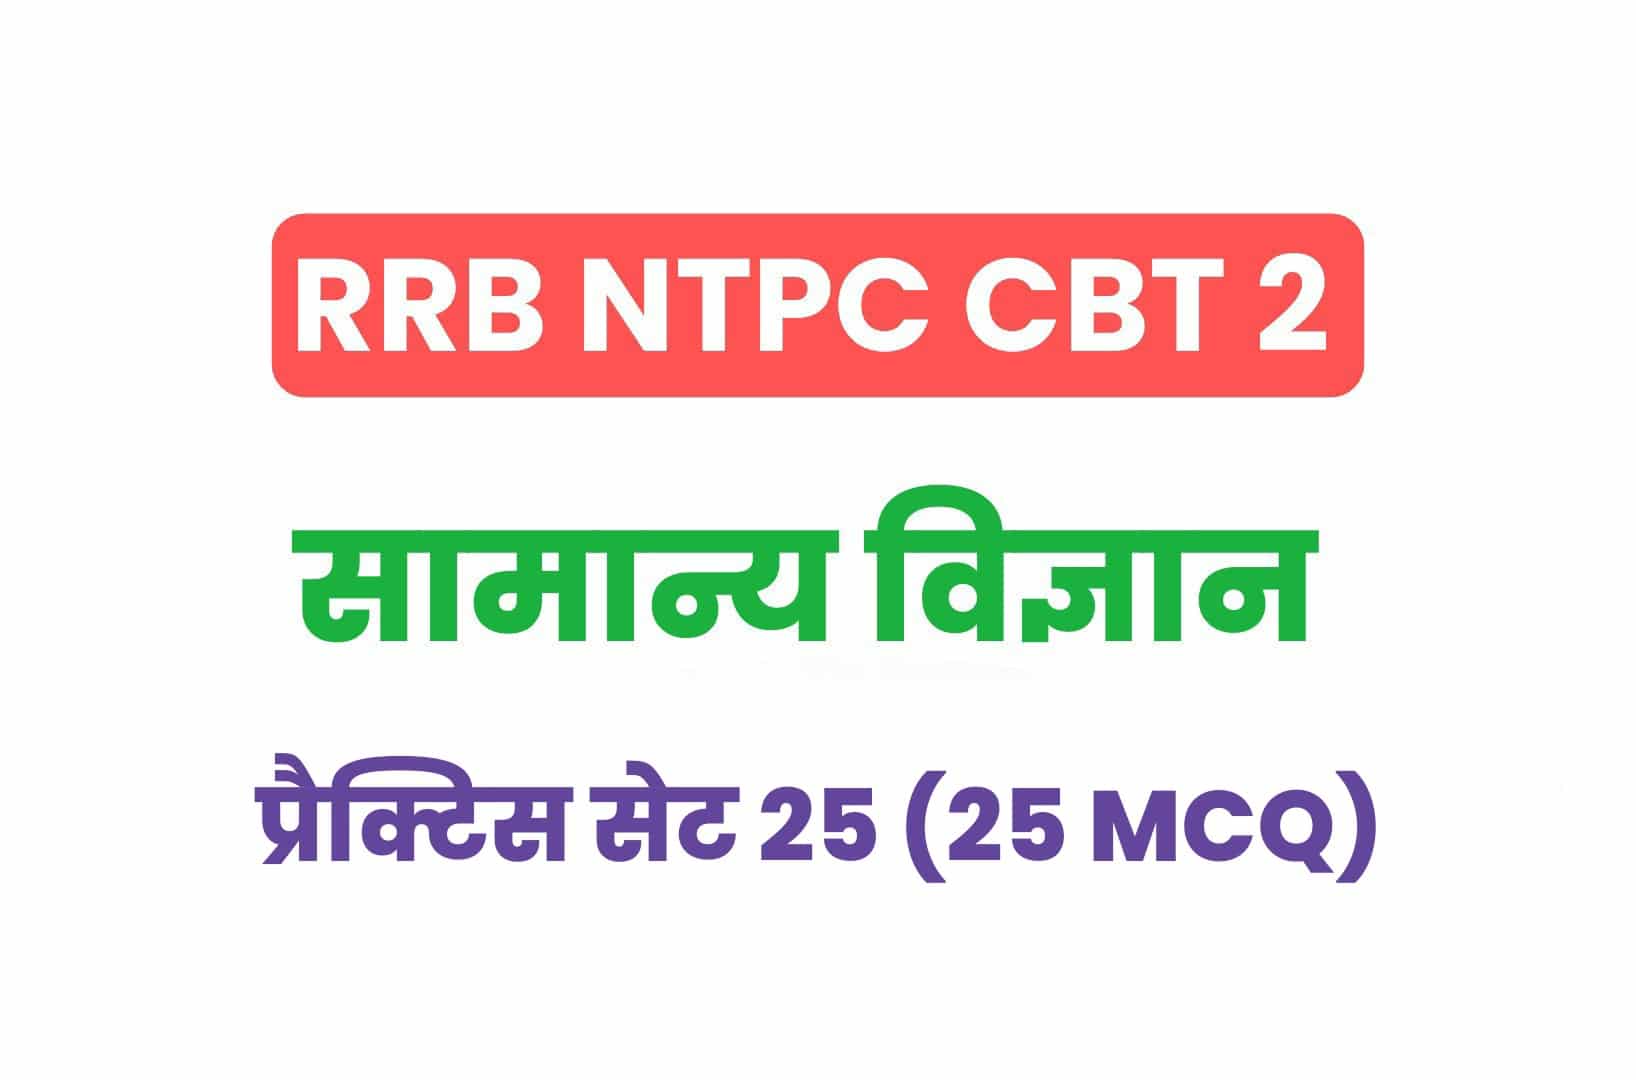 RRB NTPC CBT 2 Science प्रैक्टिस सेट 25: सामान्य विज्ञान के महत्वपूर्ण प्रश्नों का करें अध्ययन